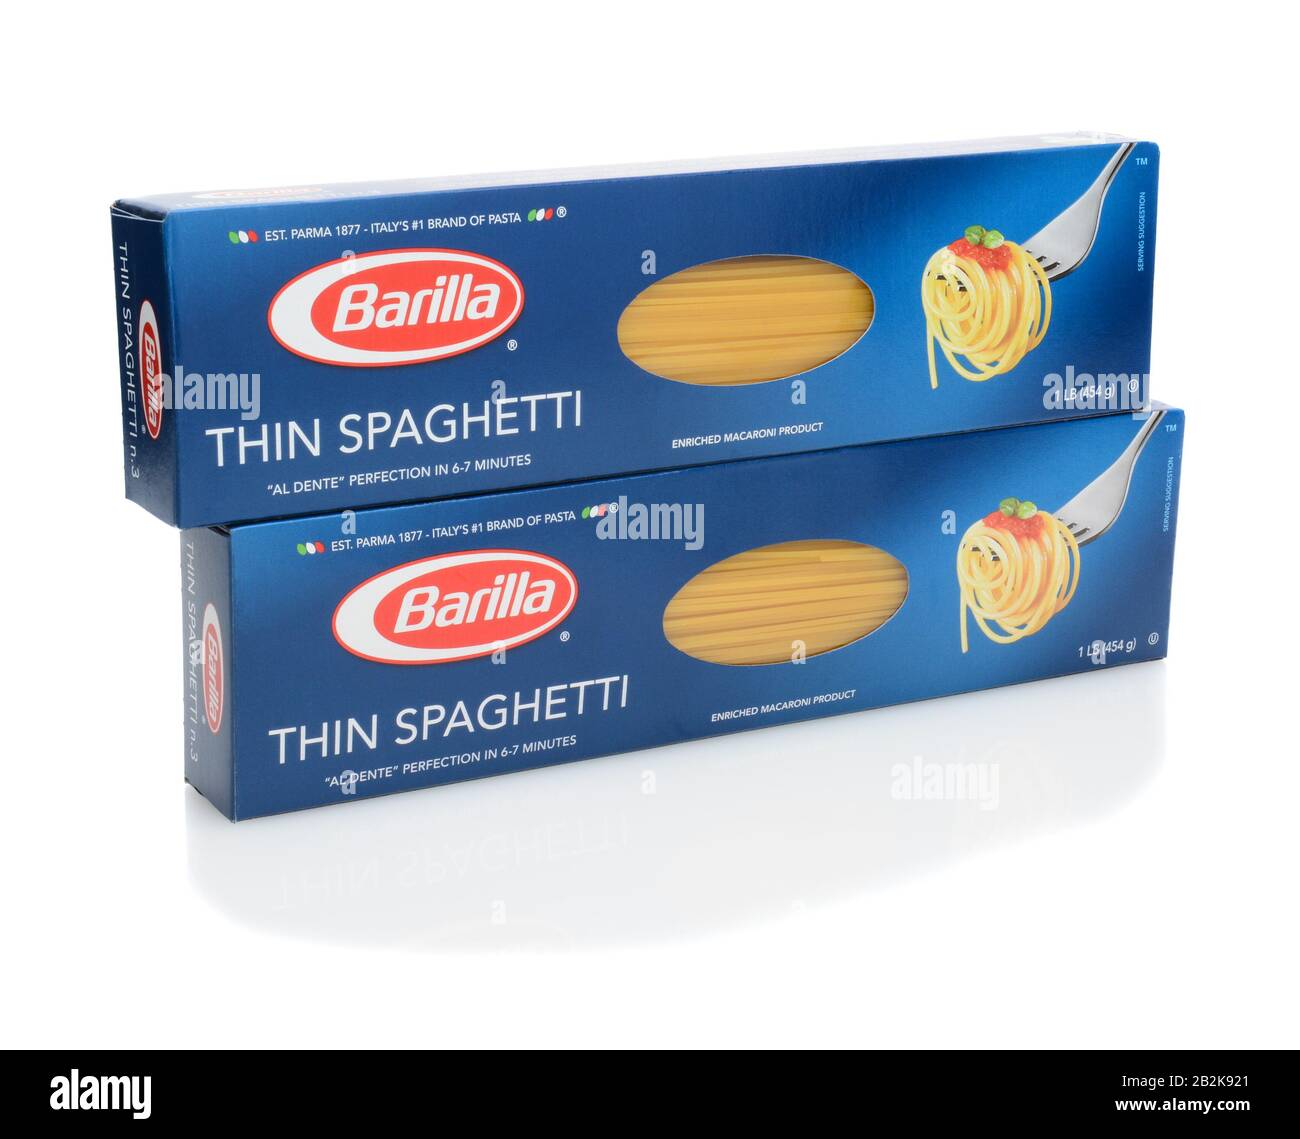 Irvine, CA - 15. SEPTEMBER 2014: Zwei Boxen von Barilla Thin Spaghetti. Das Unternehmen wurde 1877 in Ponte Taro bei Parma in Italien gegründet. Stockfoto